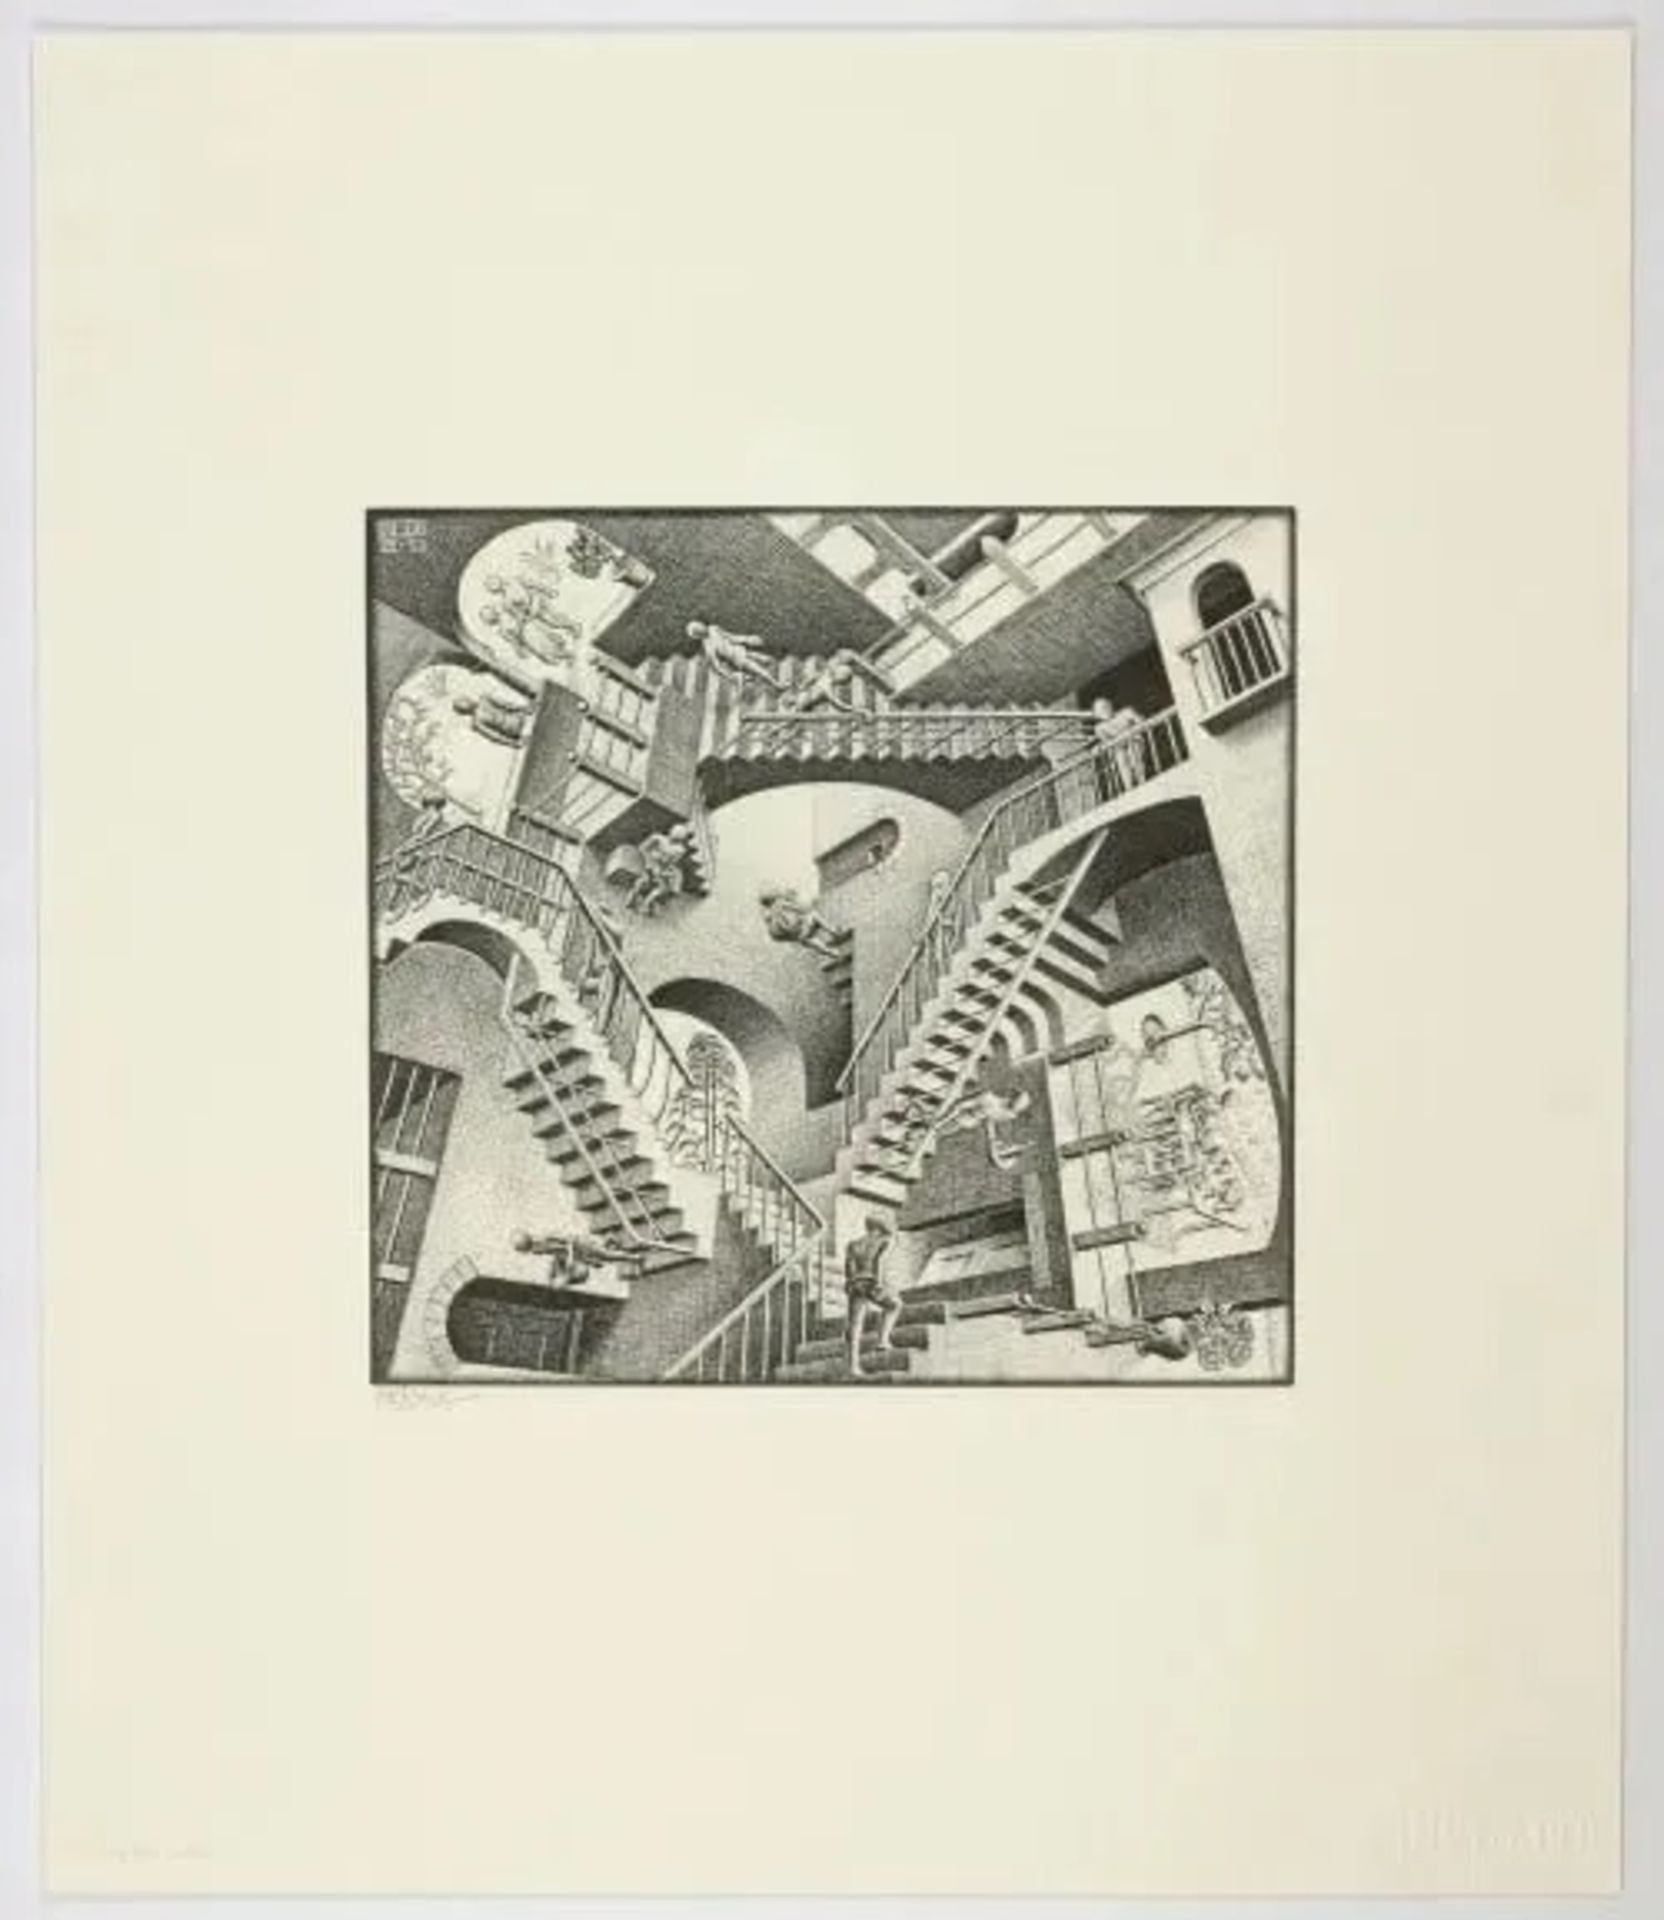 M.C. Escher "Relativity" Etching